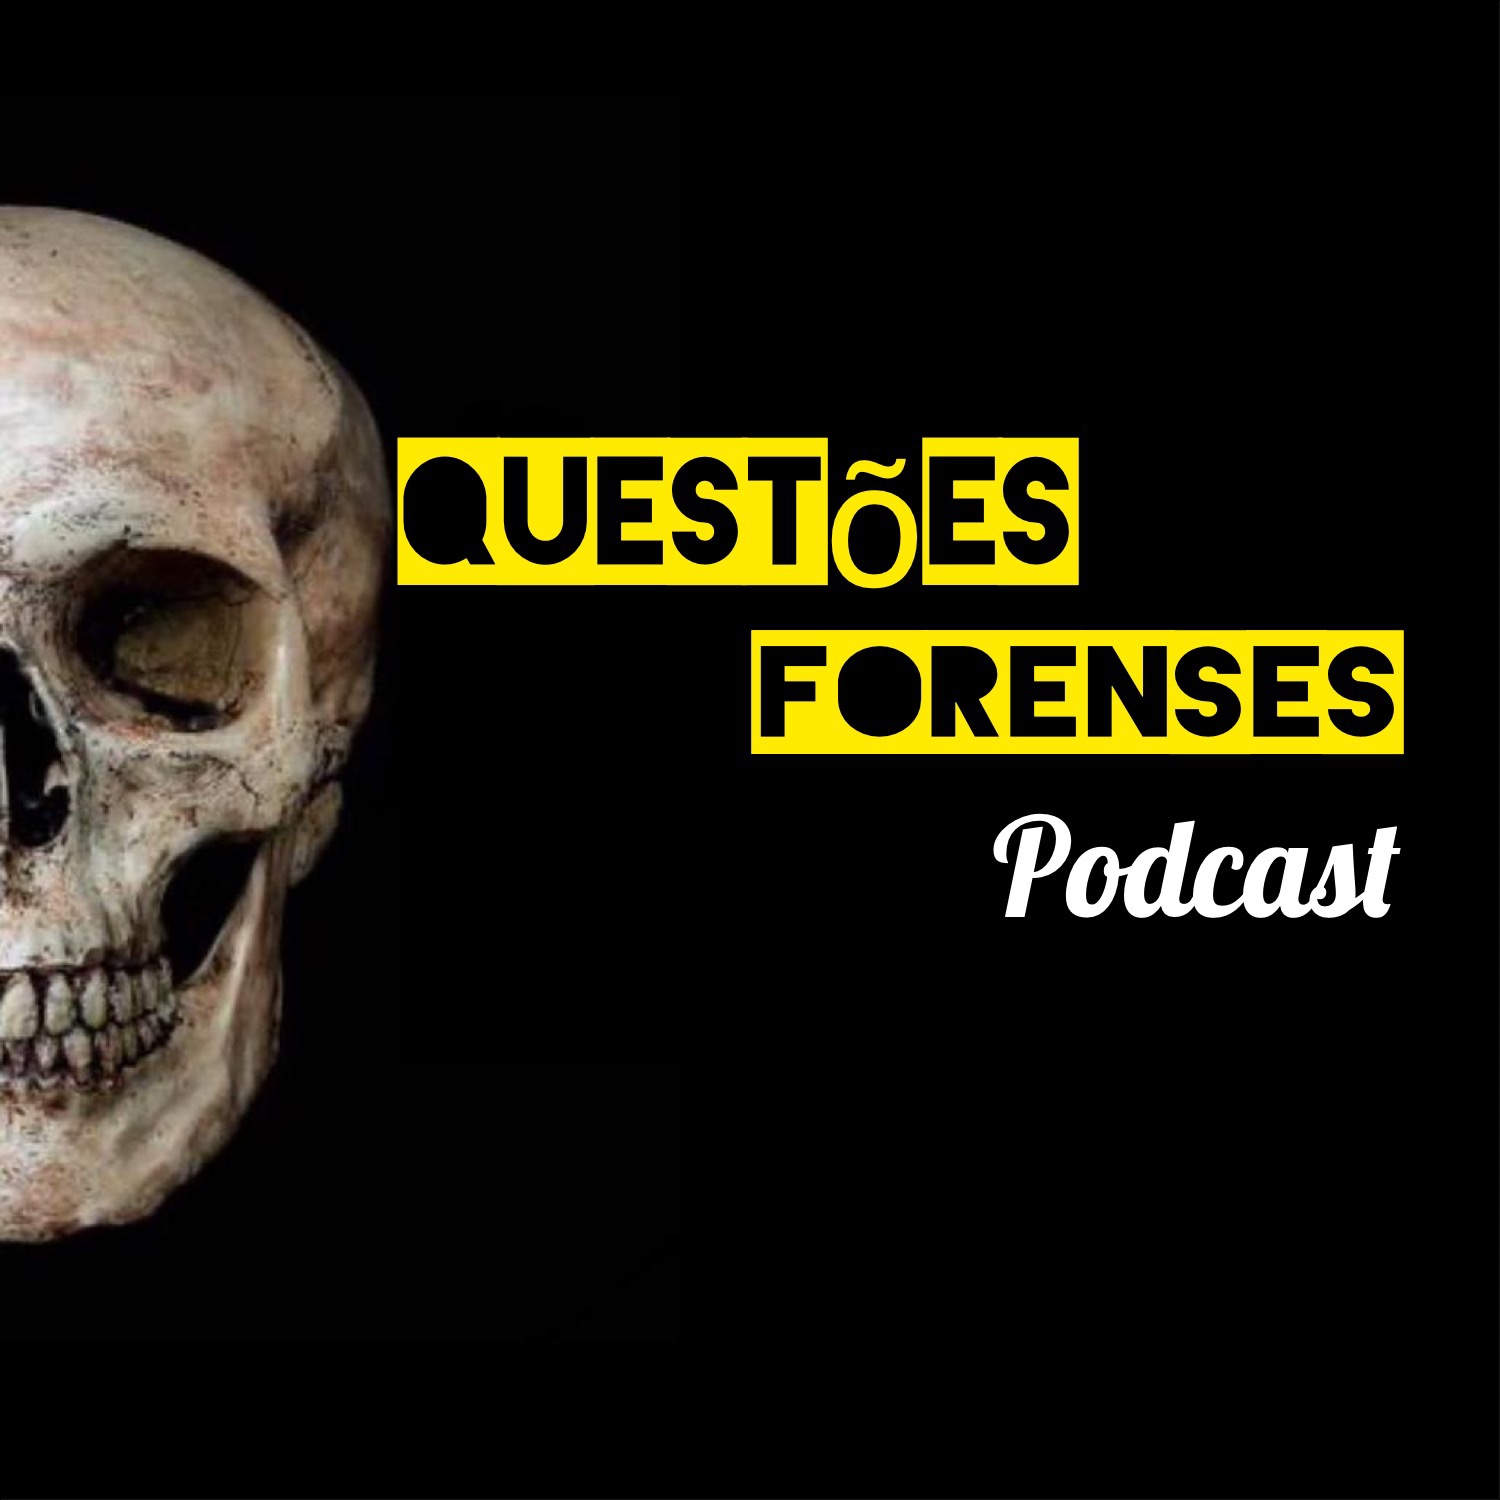 Questões Forenses Podcast